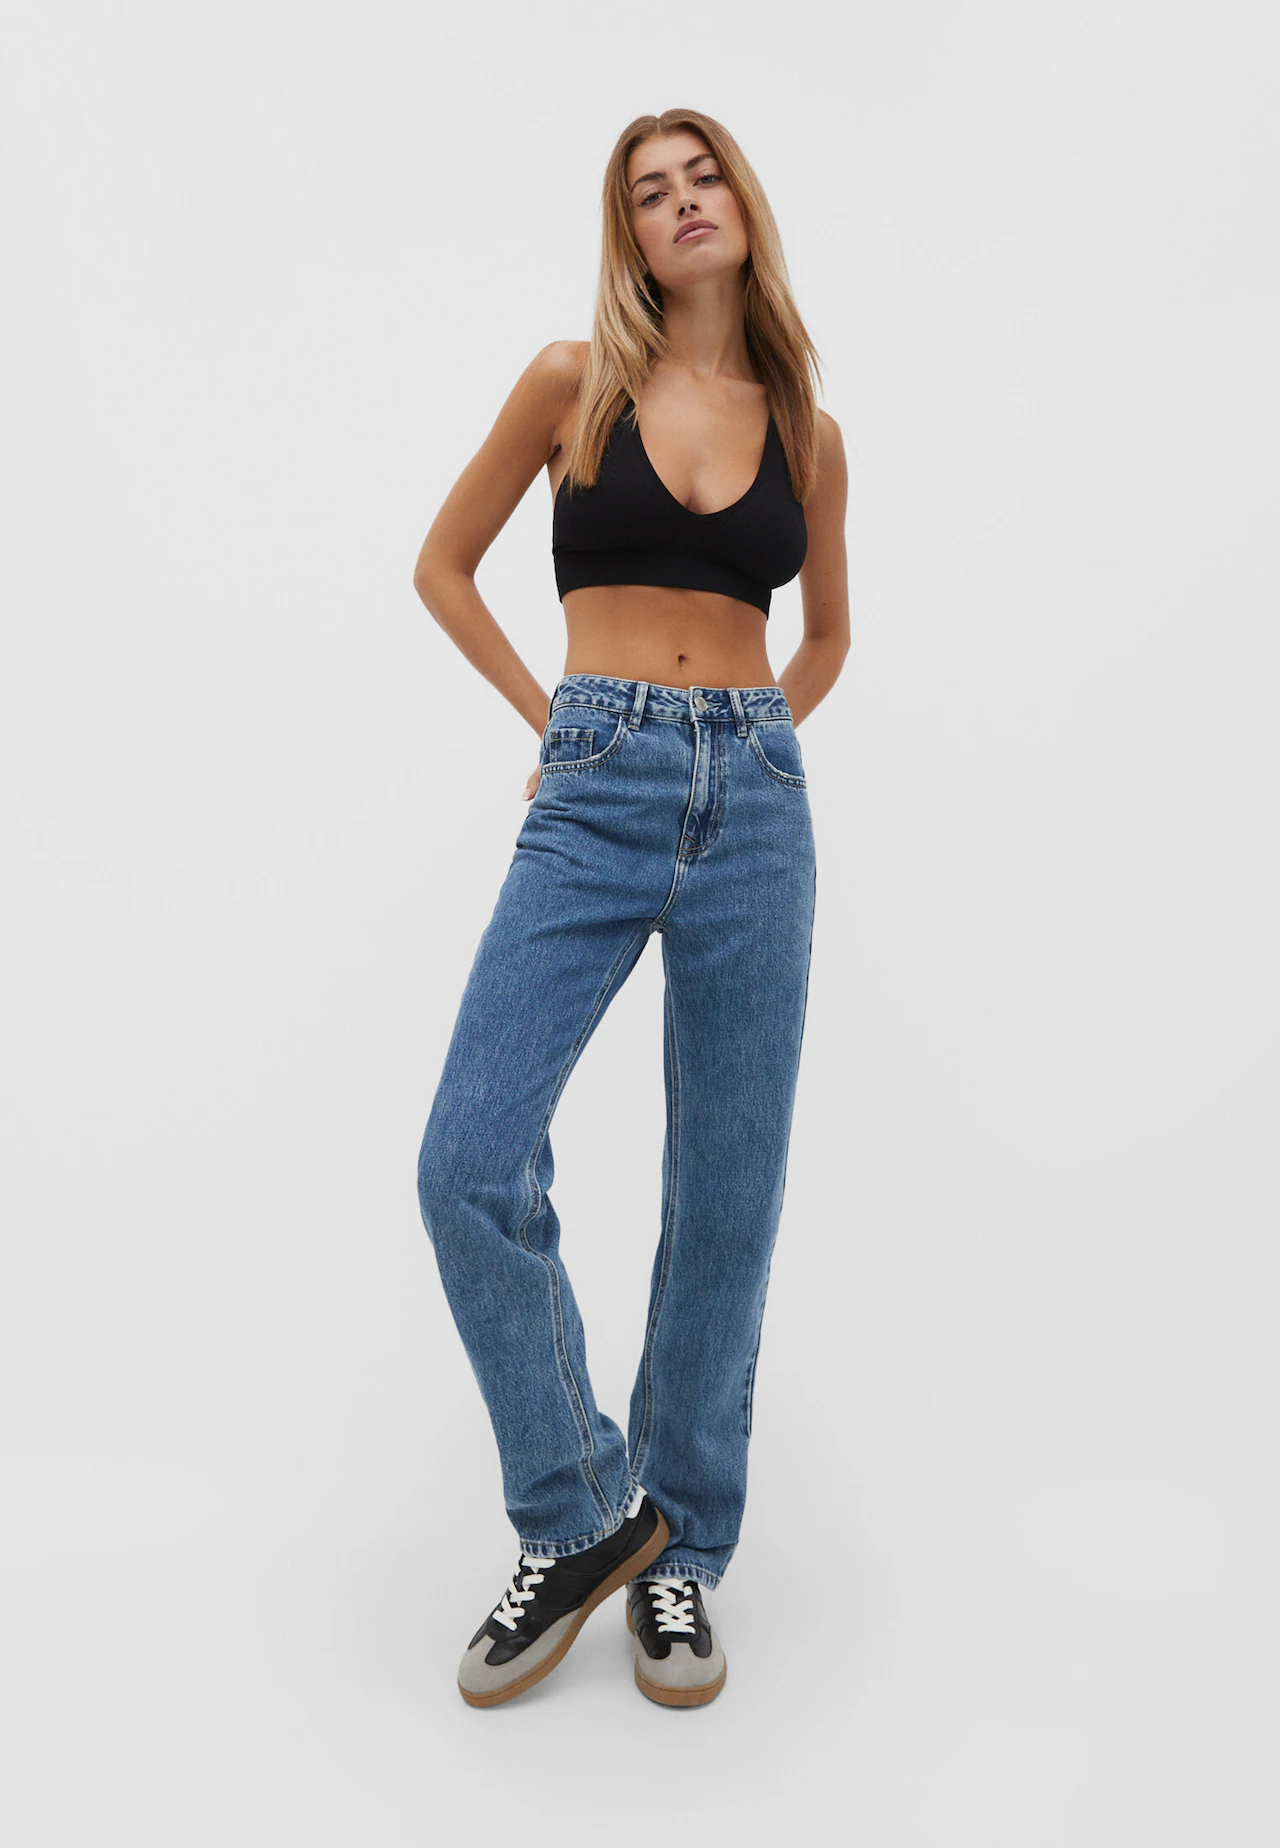 Skinny Jeans For Women, Designer Jeans For Women